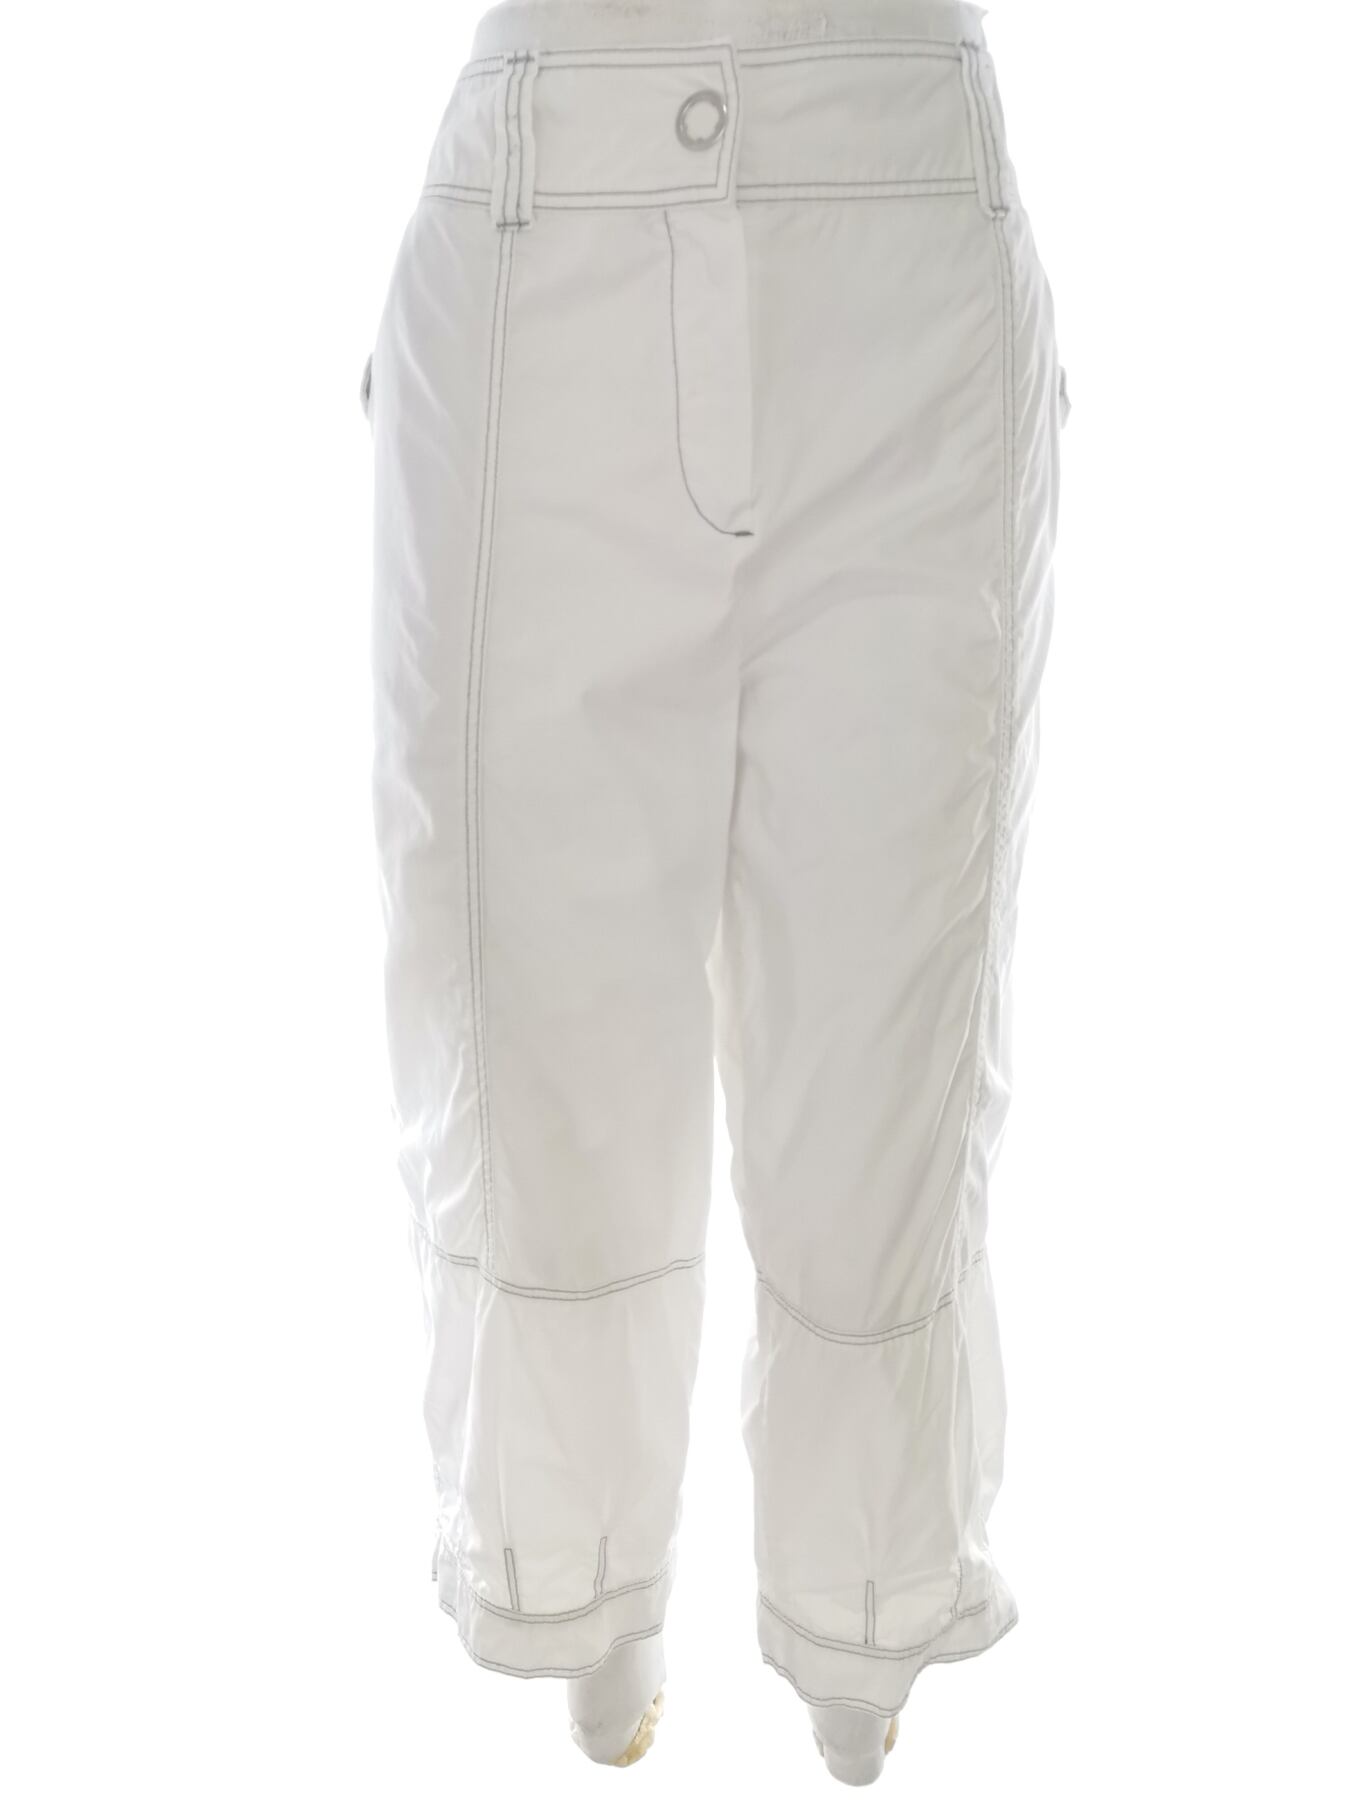 2 Biz Rozmiar XL Kolor Biały Spodnie Casual Materiał Bawełna 100%